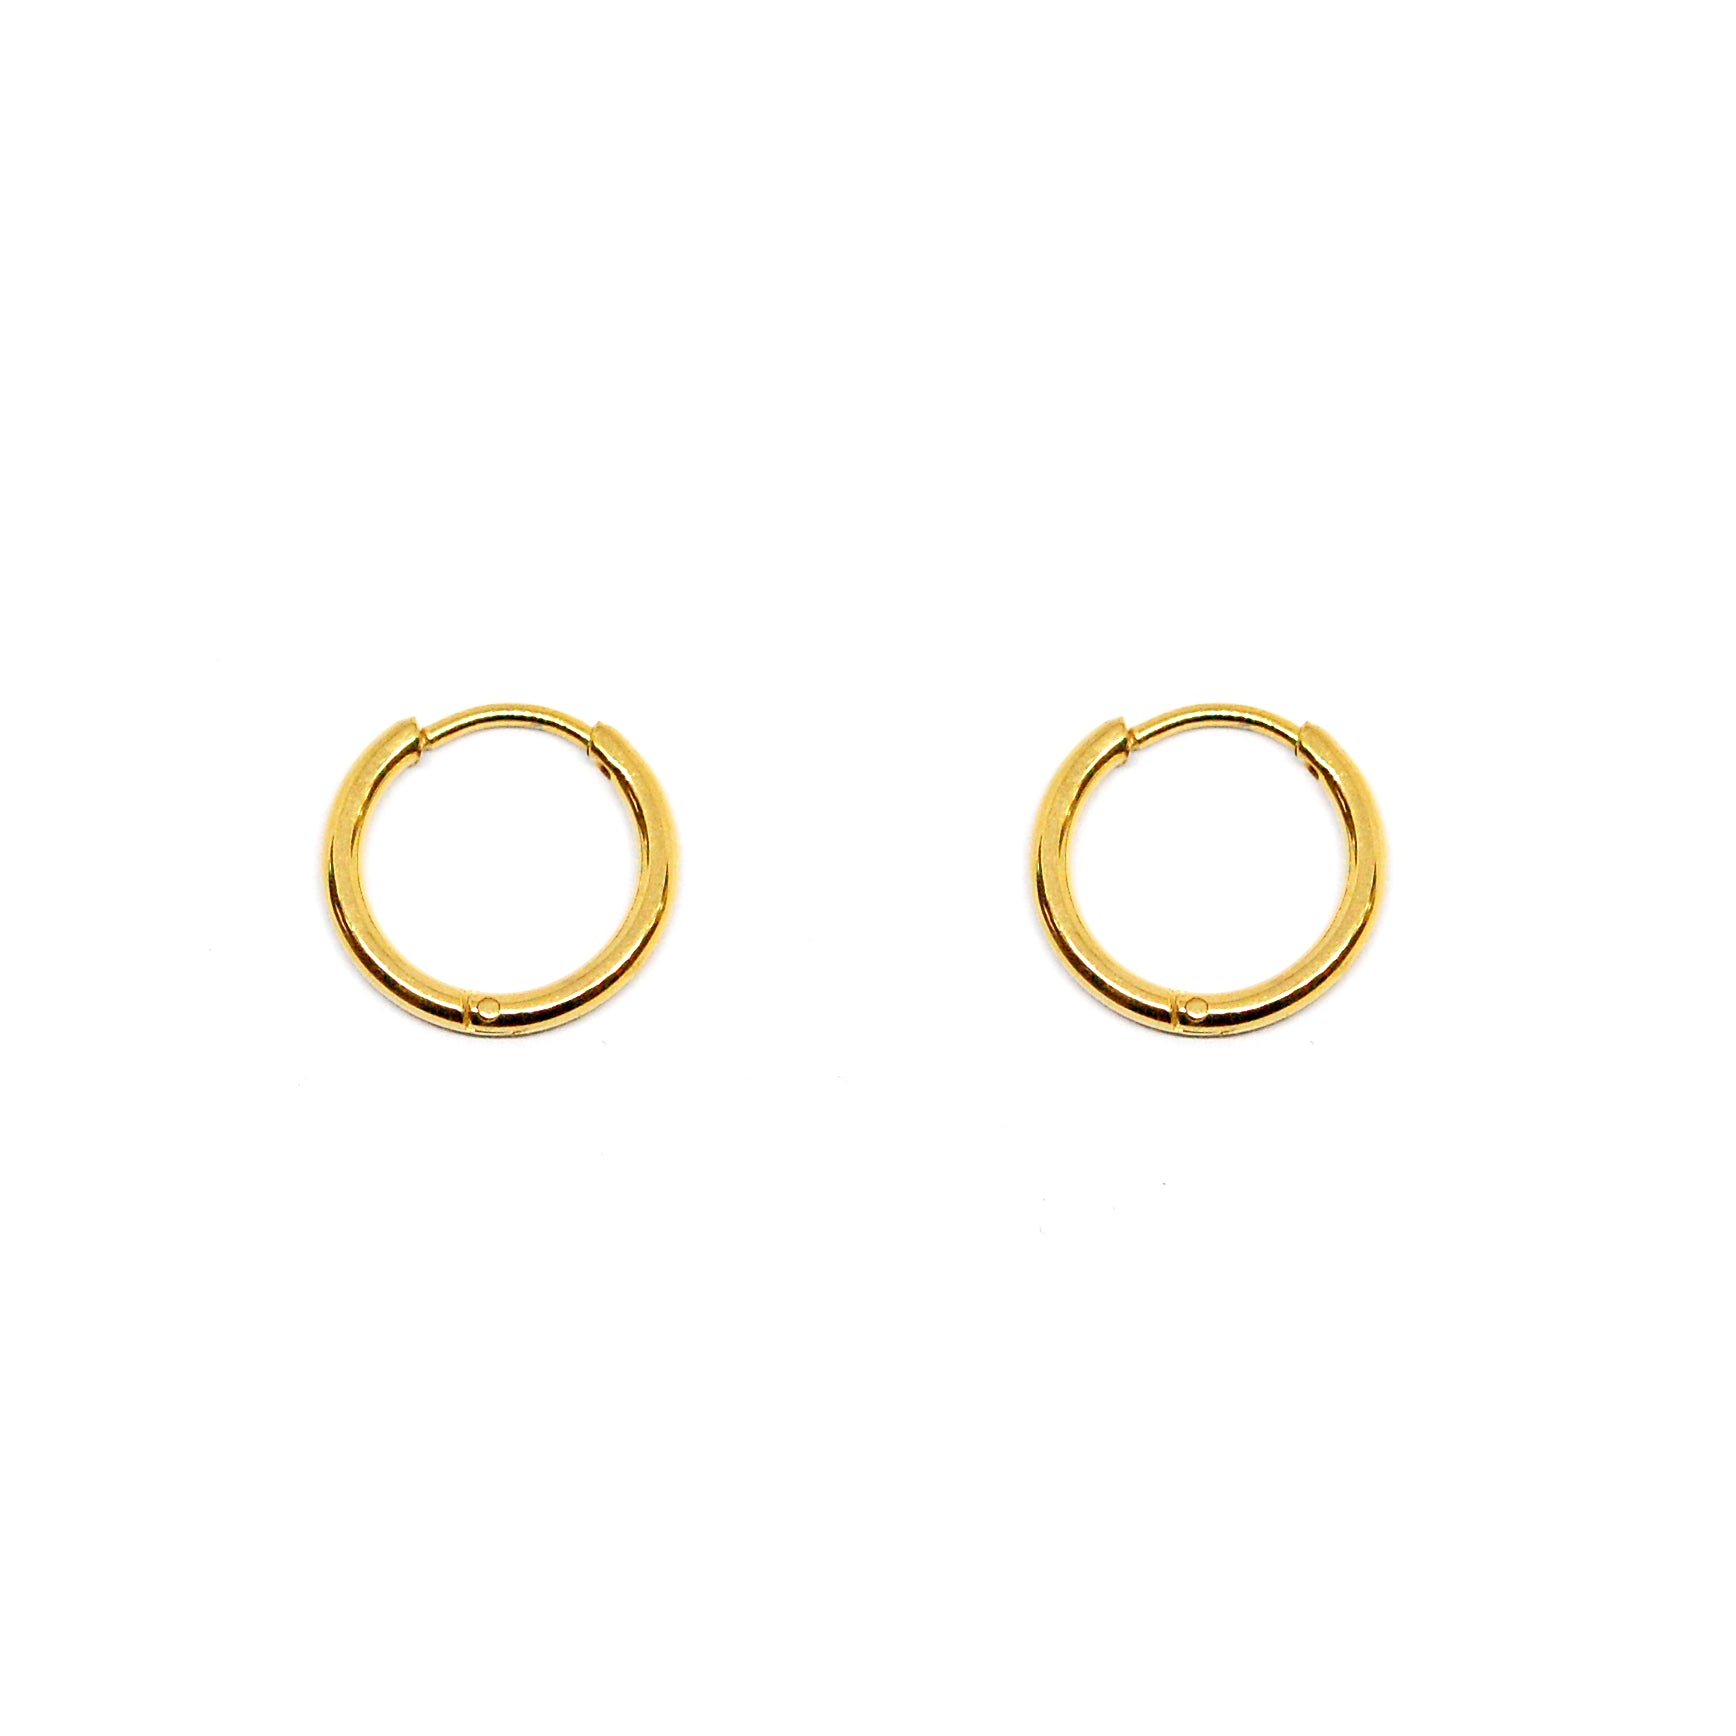 ESE 7996: All IPG Thin 12mm Hoop Earrings